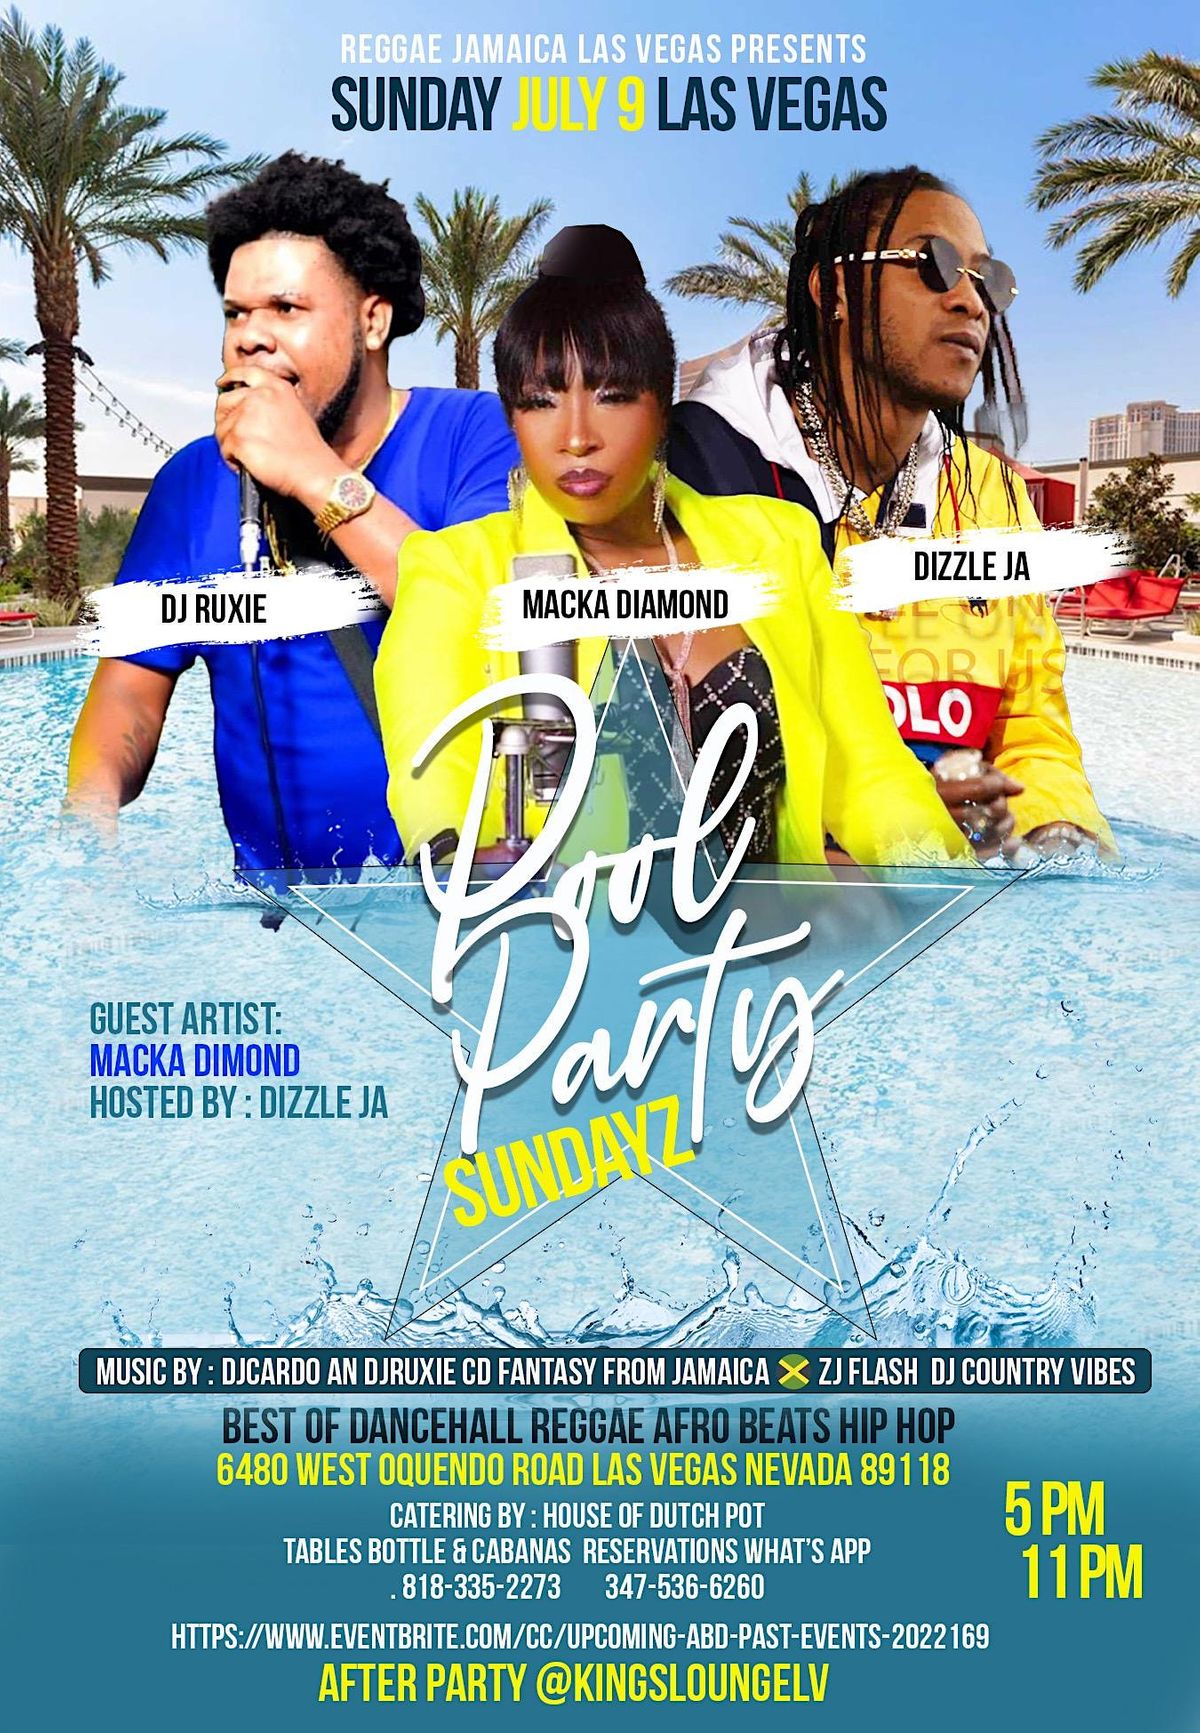 Pool Party Sundayz Las Vegas